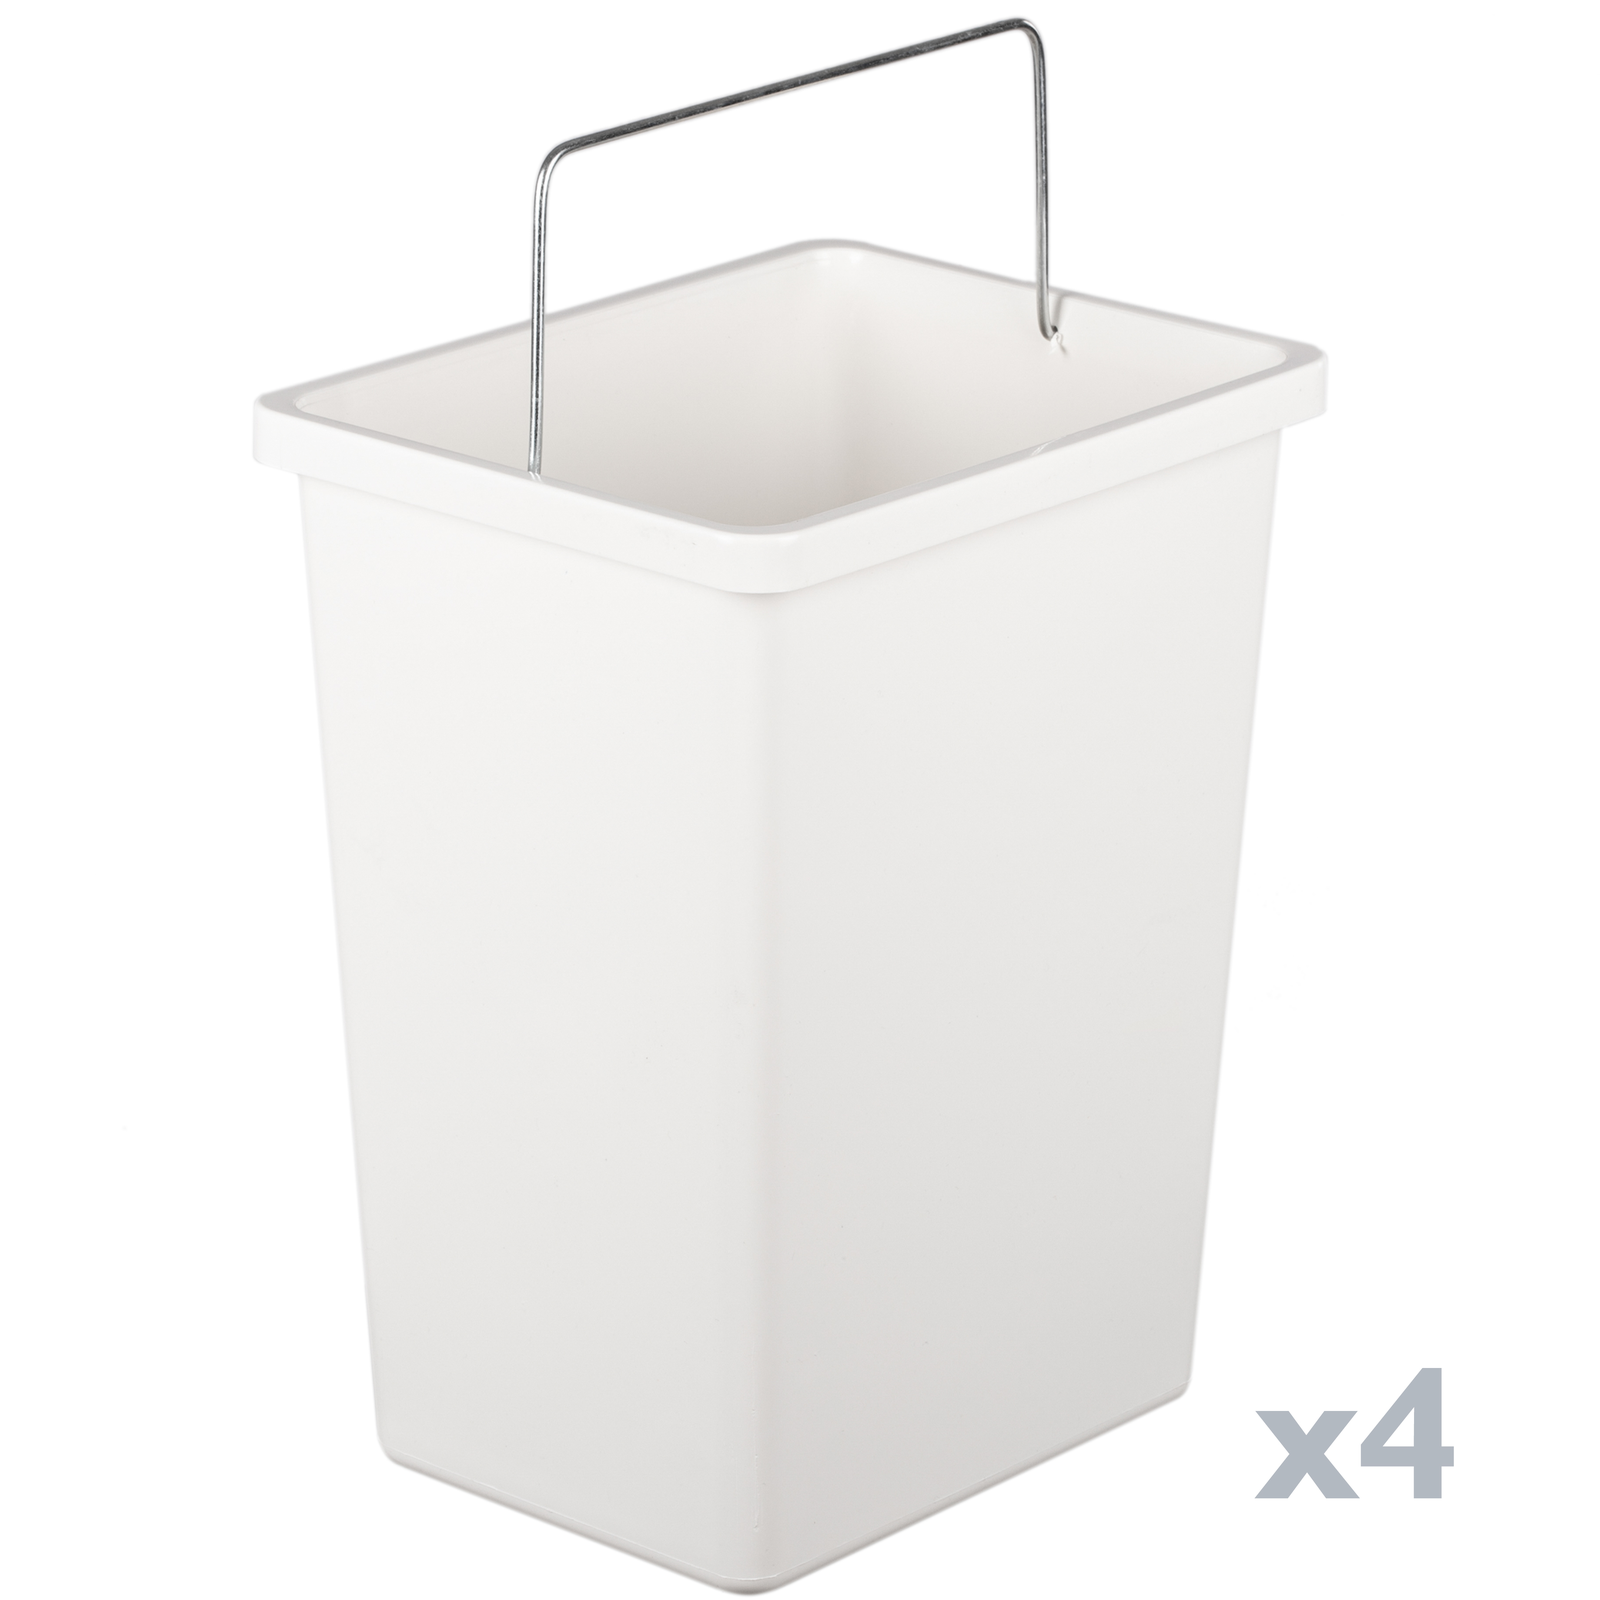 Basics - Pattumiera rettangolare per riciclaggio dei rifiuti con 2  scomparti, 60 litri, Argento/Nero 